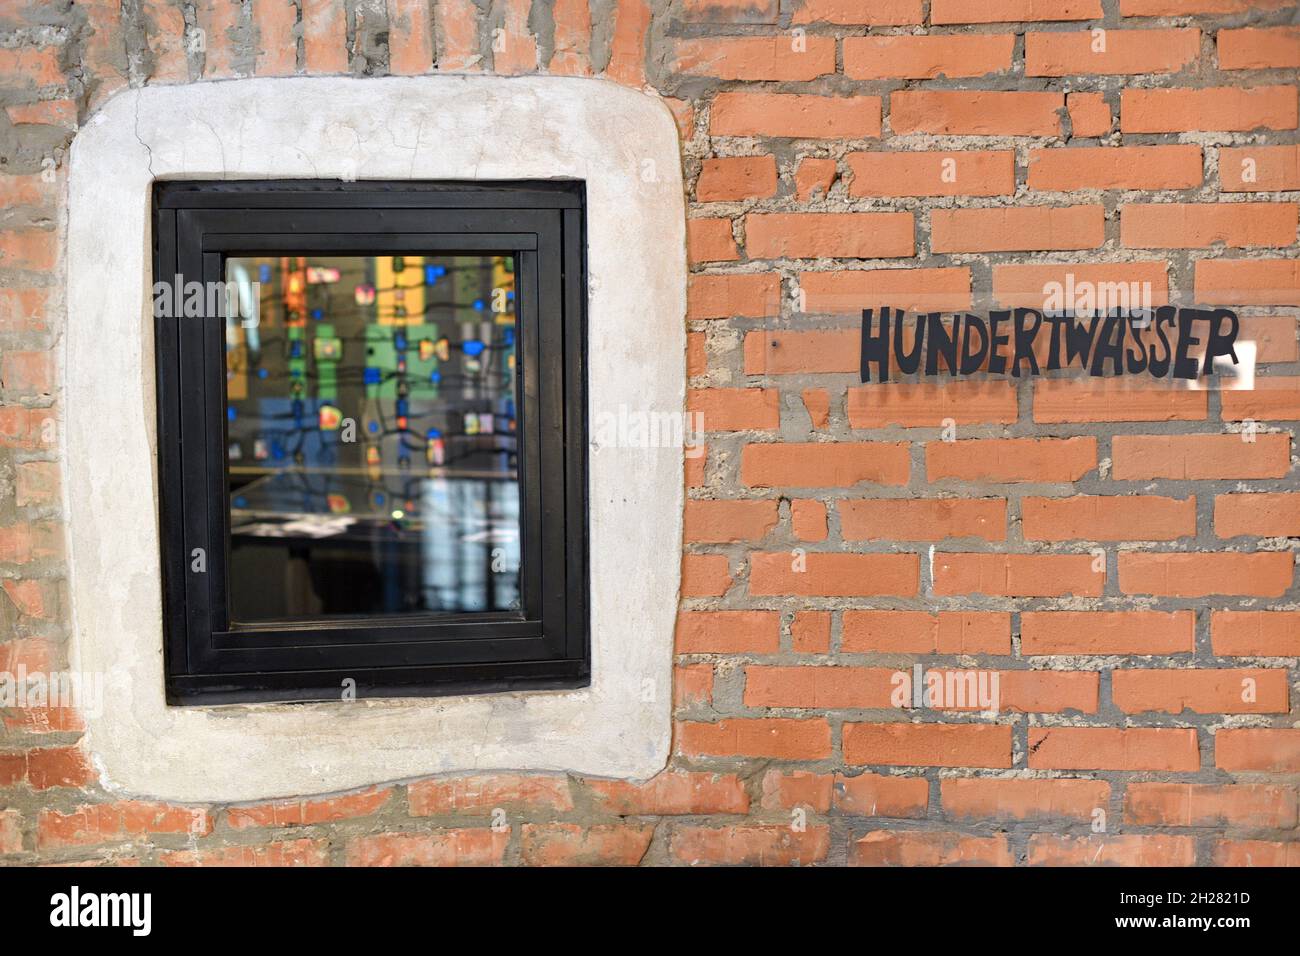 Das Kunsthaus Wien ist ein vom Maler Friedensreich Hundertwasser gestaltetes Museum und befindet sich im 3. Wiener Gemeindebezirk. Es handelt sich um Stock Photo